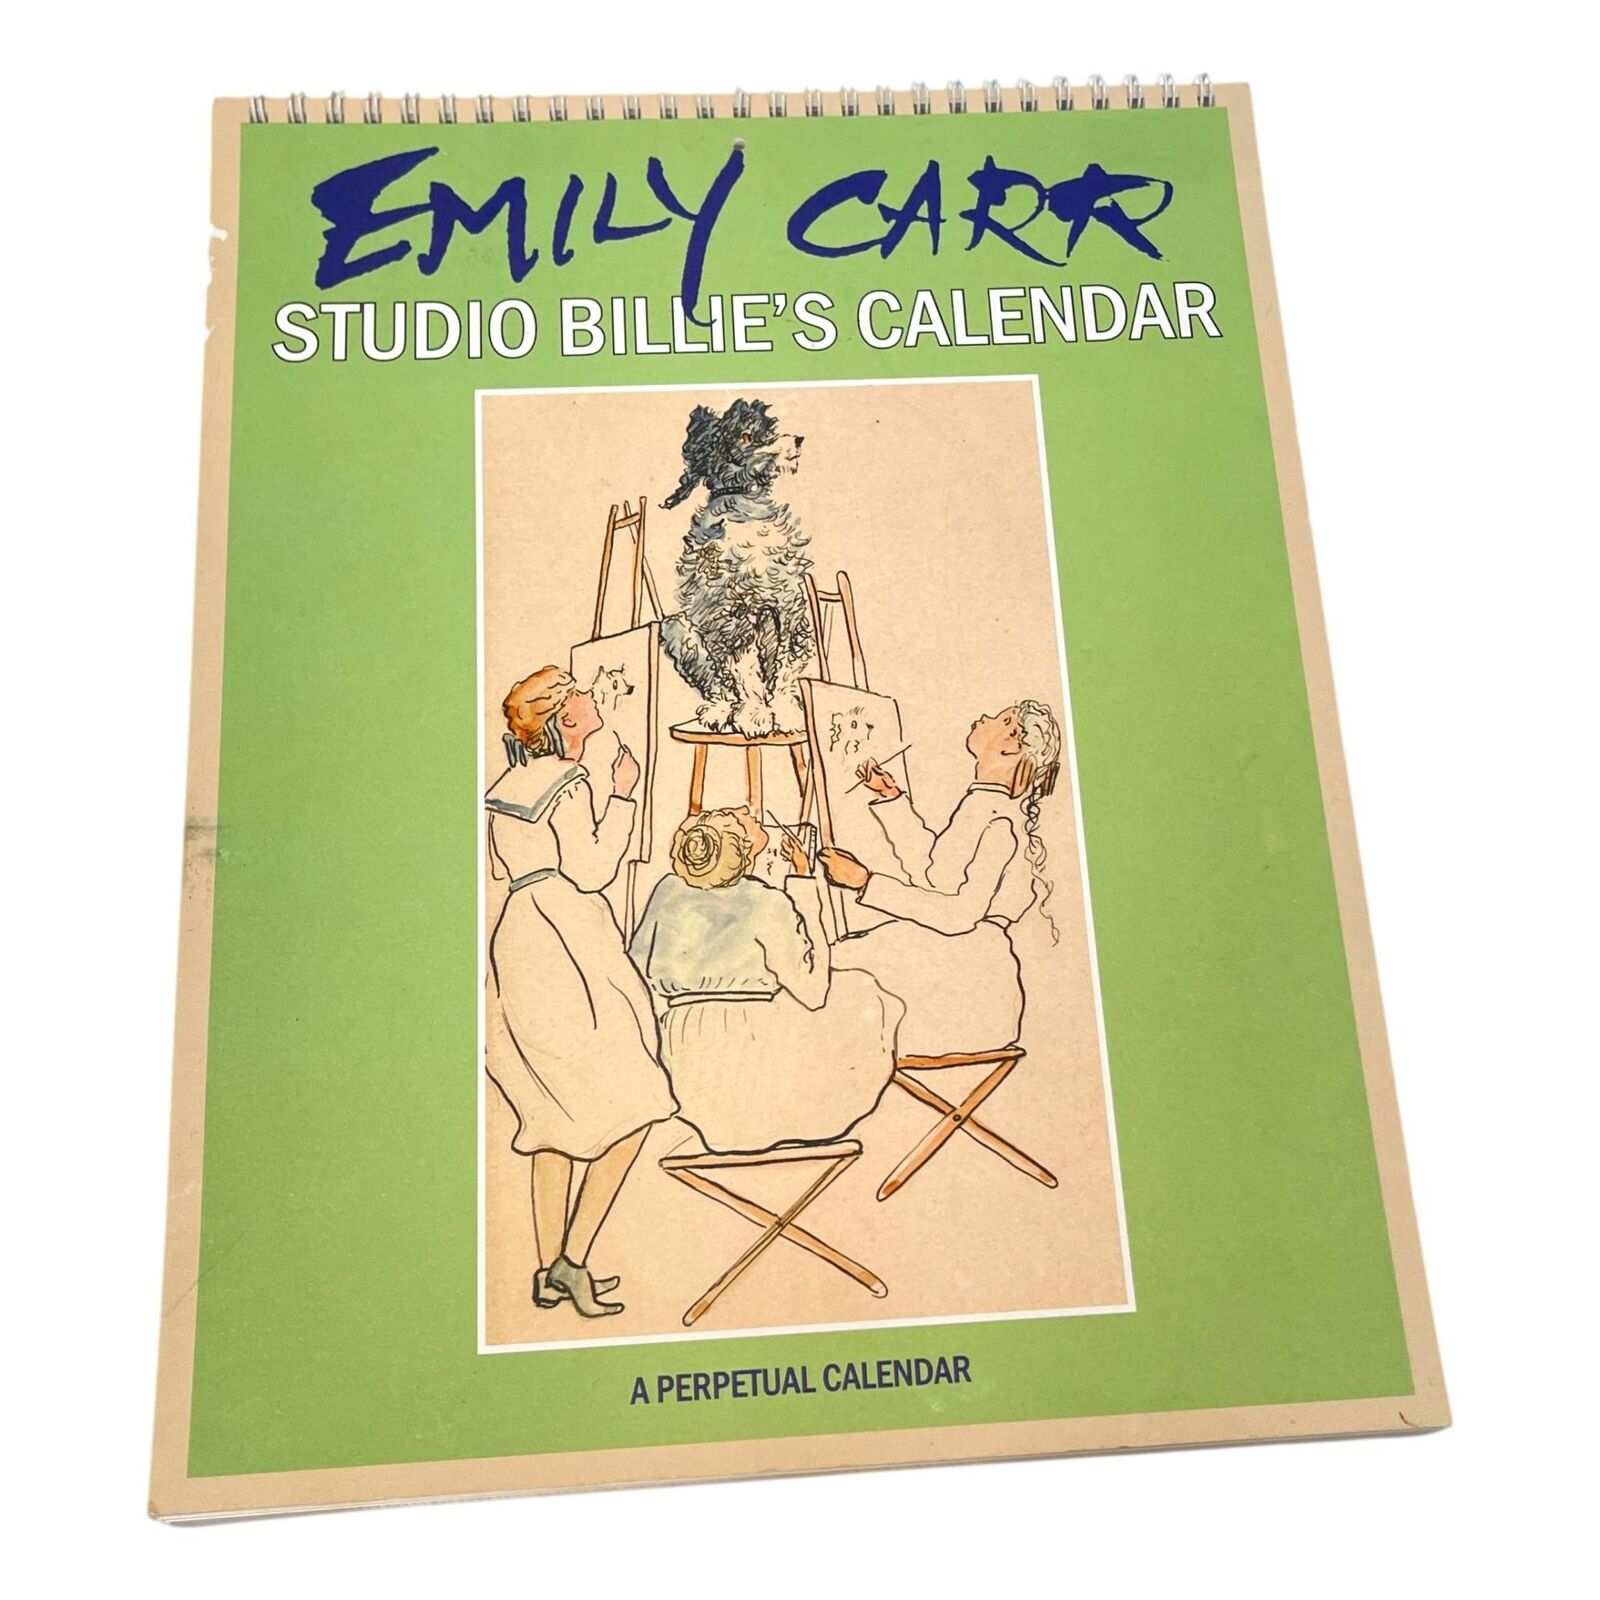 Emily Carr Perpetual Calendar Studio Billies Royal BC Museum Canadian Artist